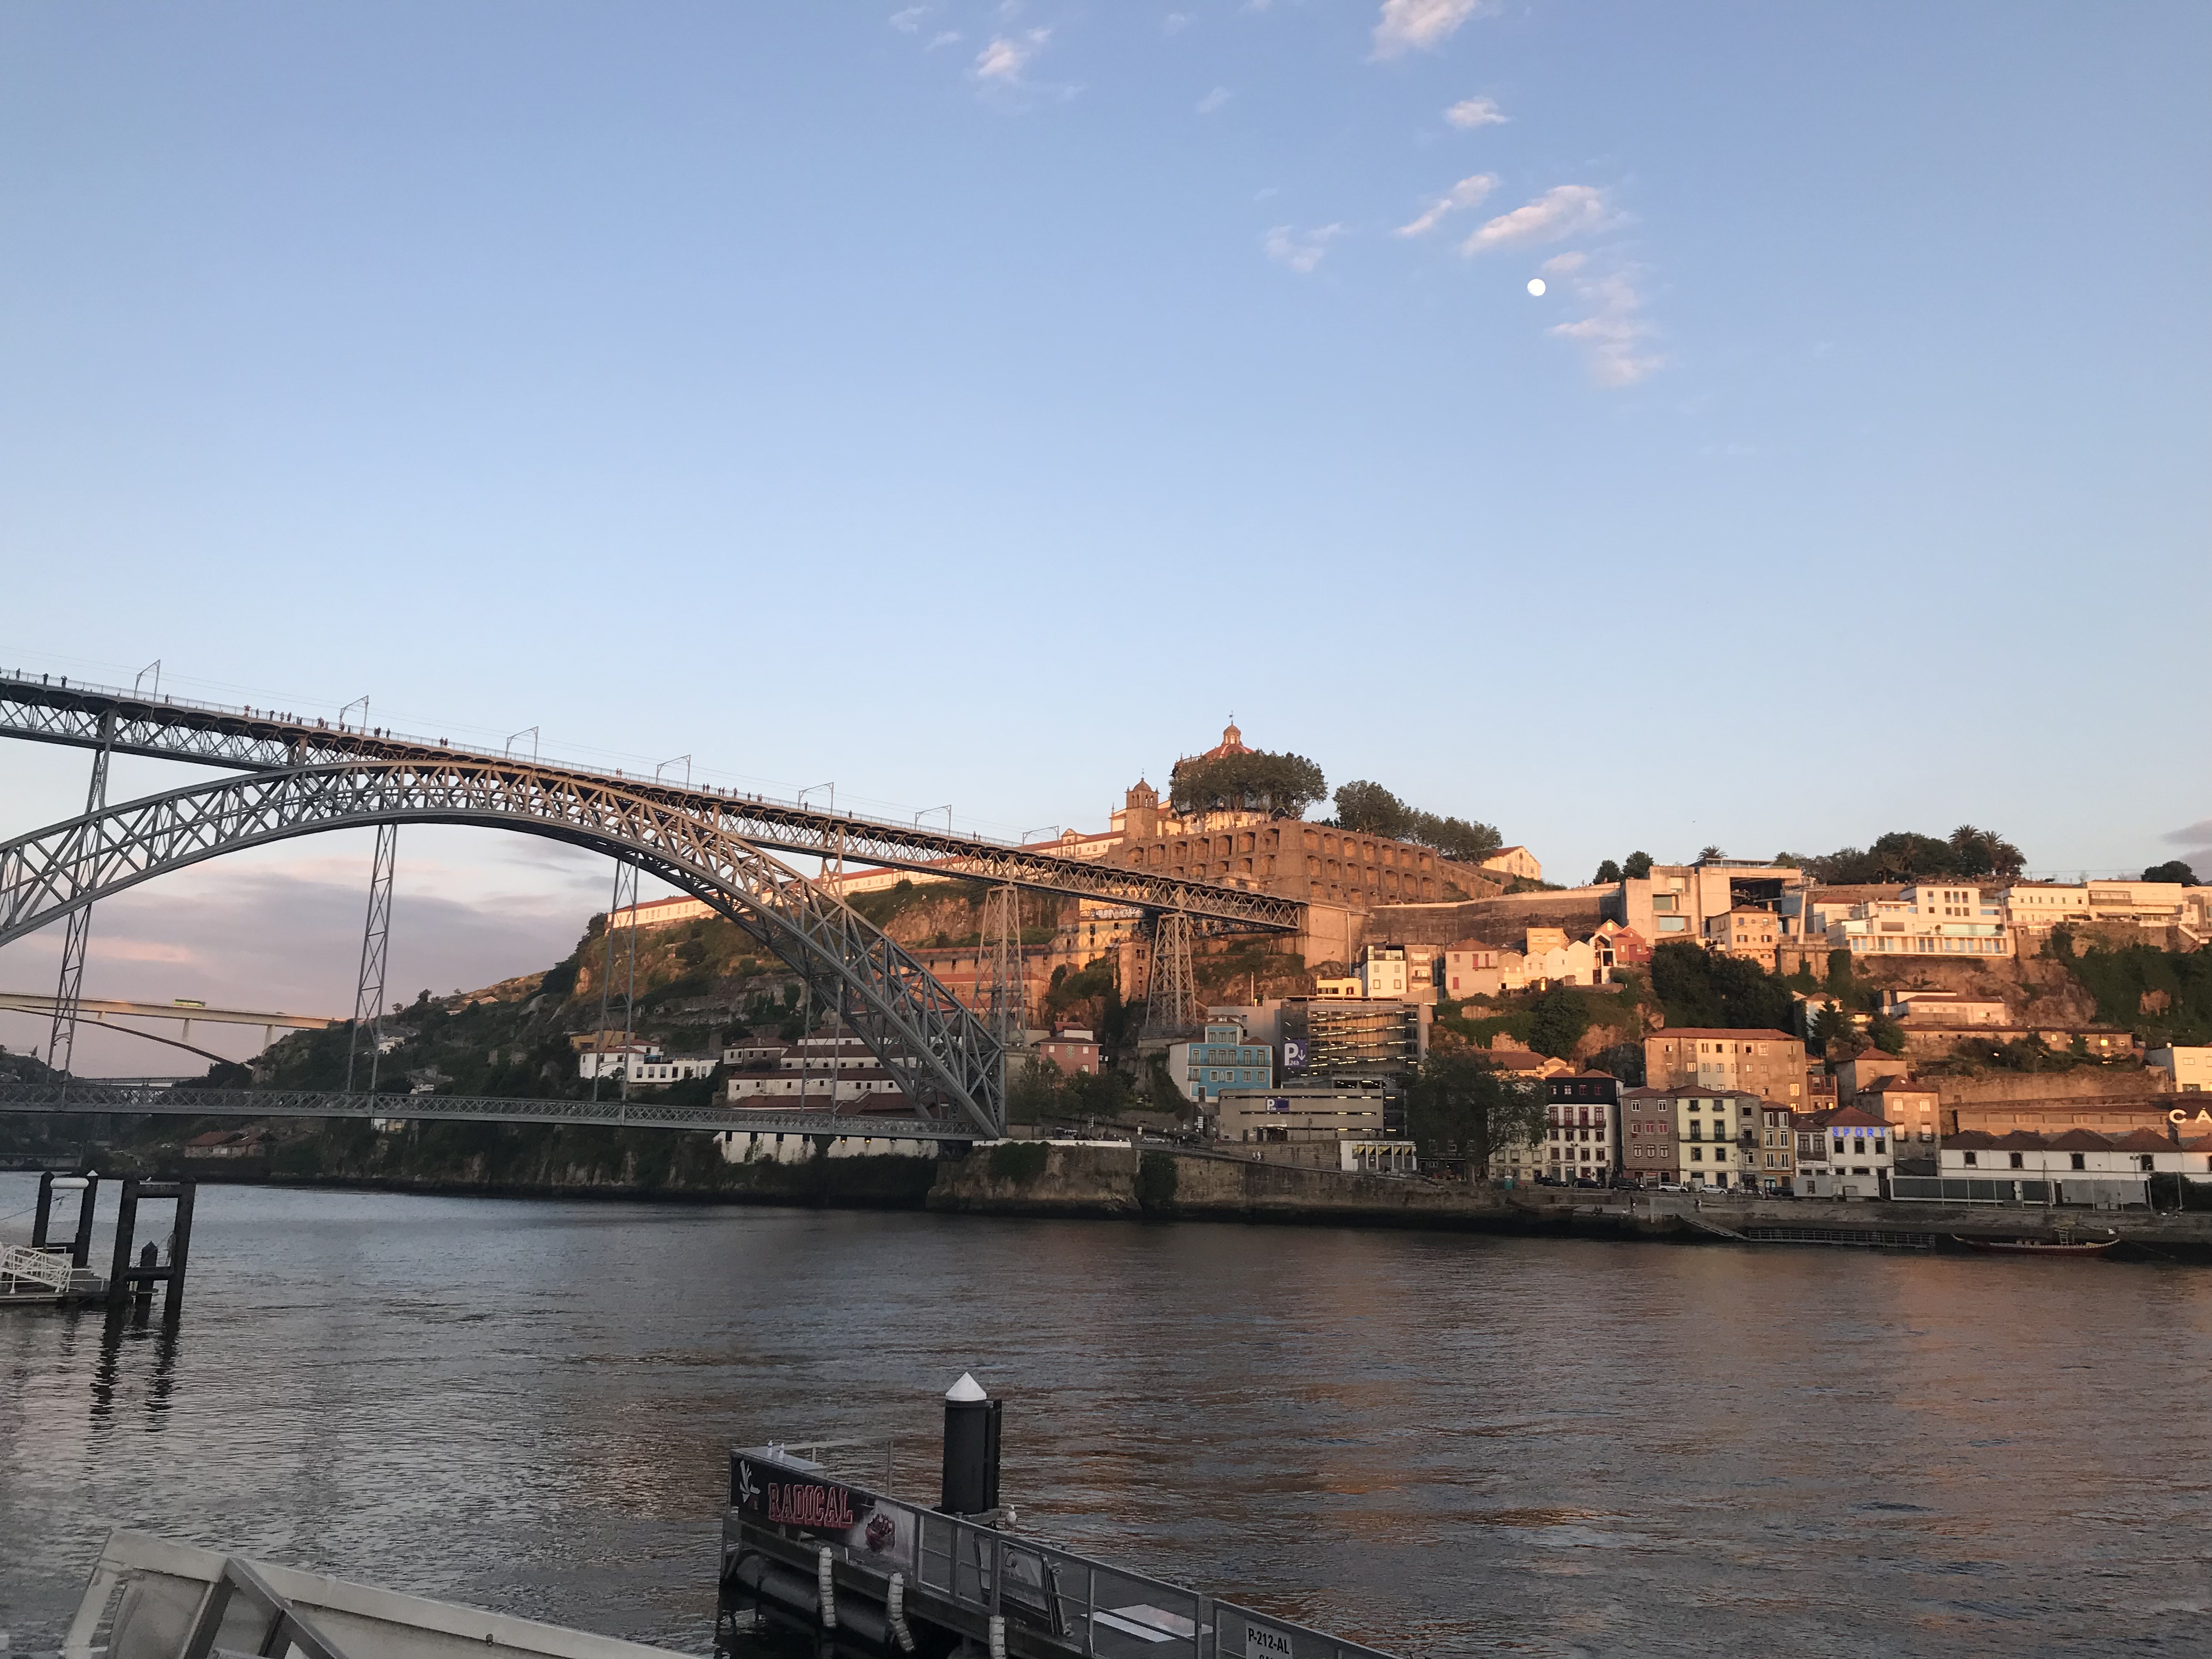 WanderustBee - Porto, Portugal